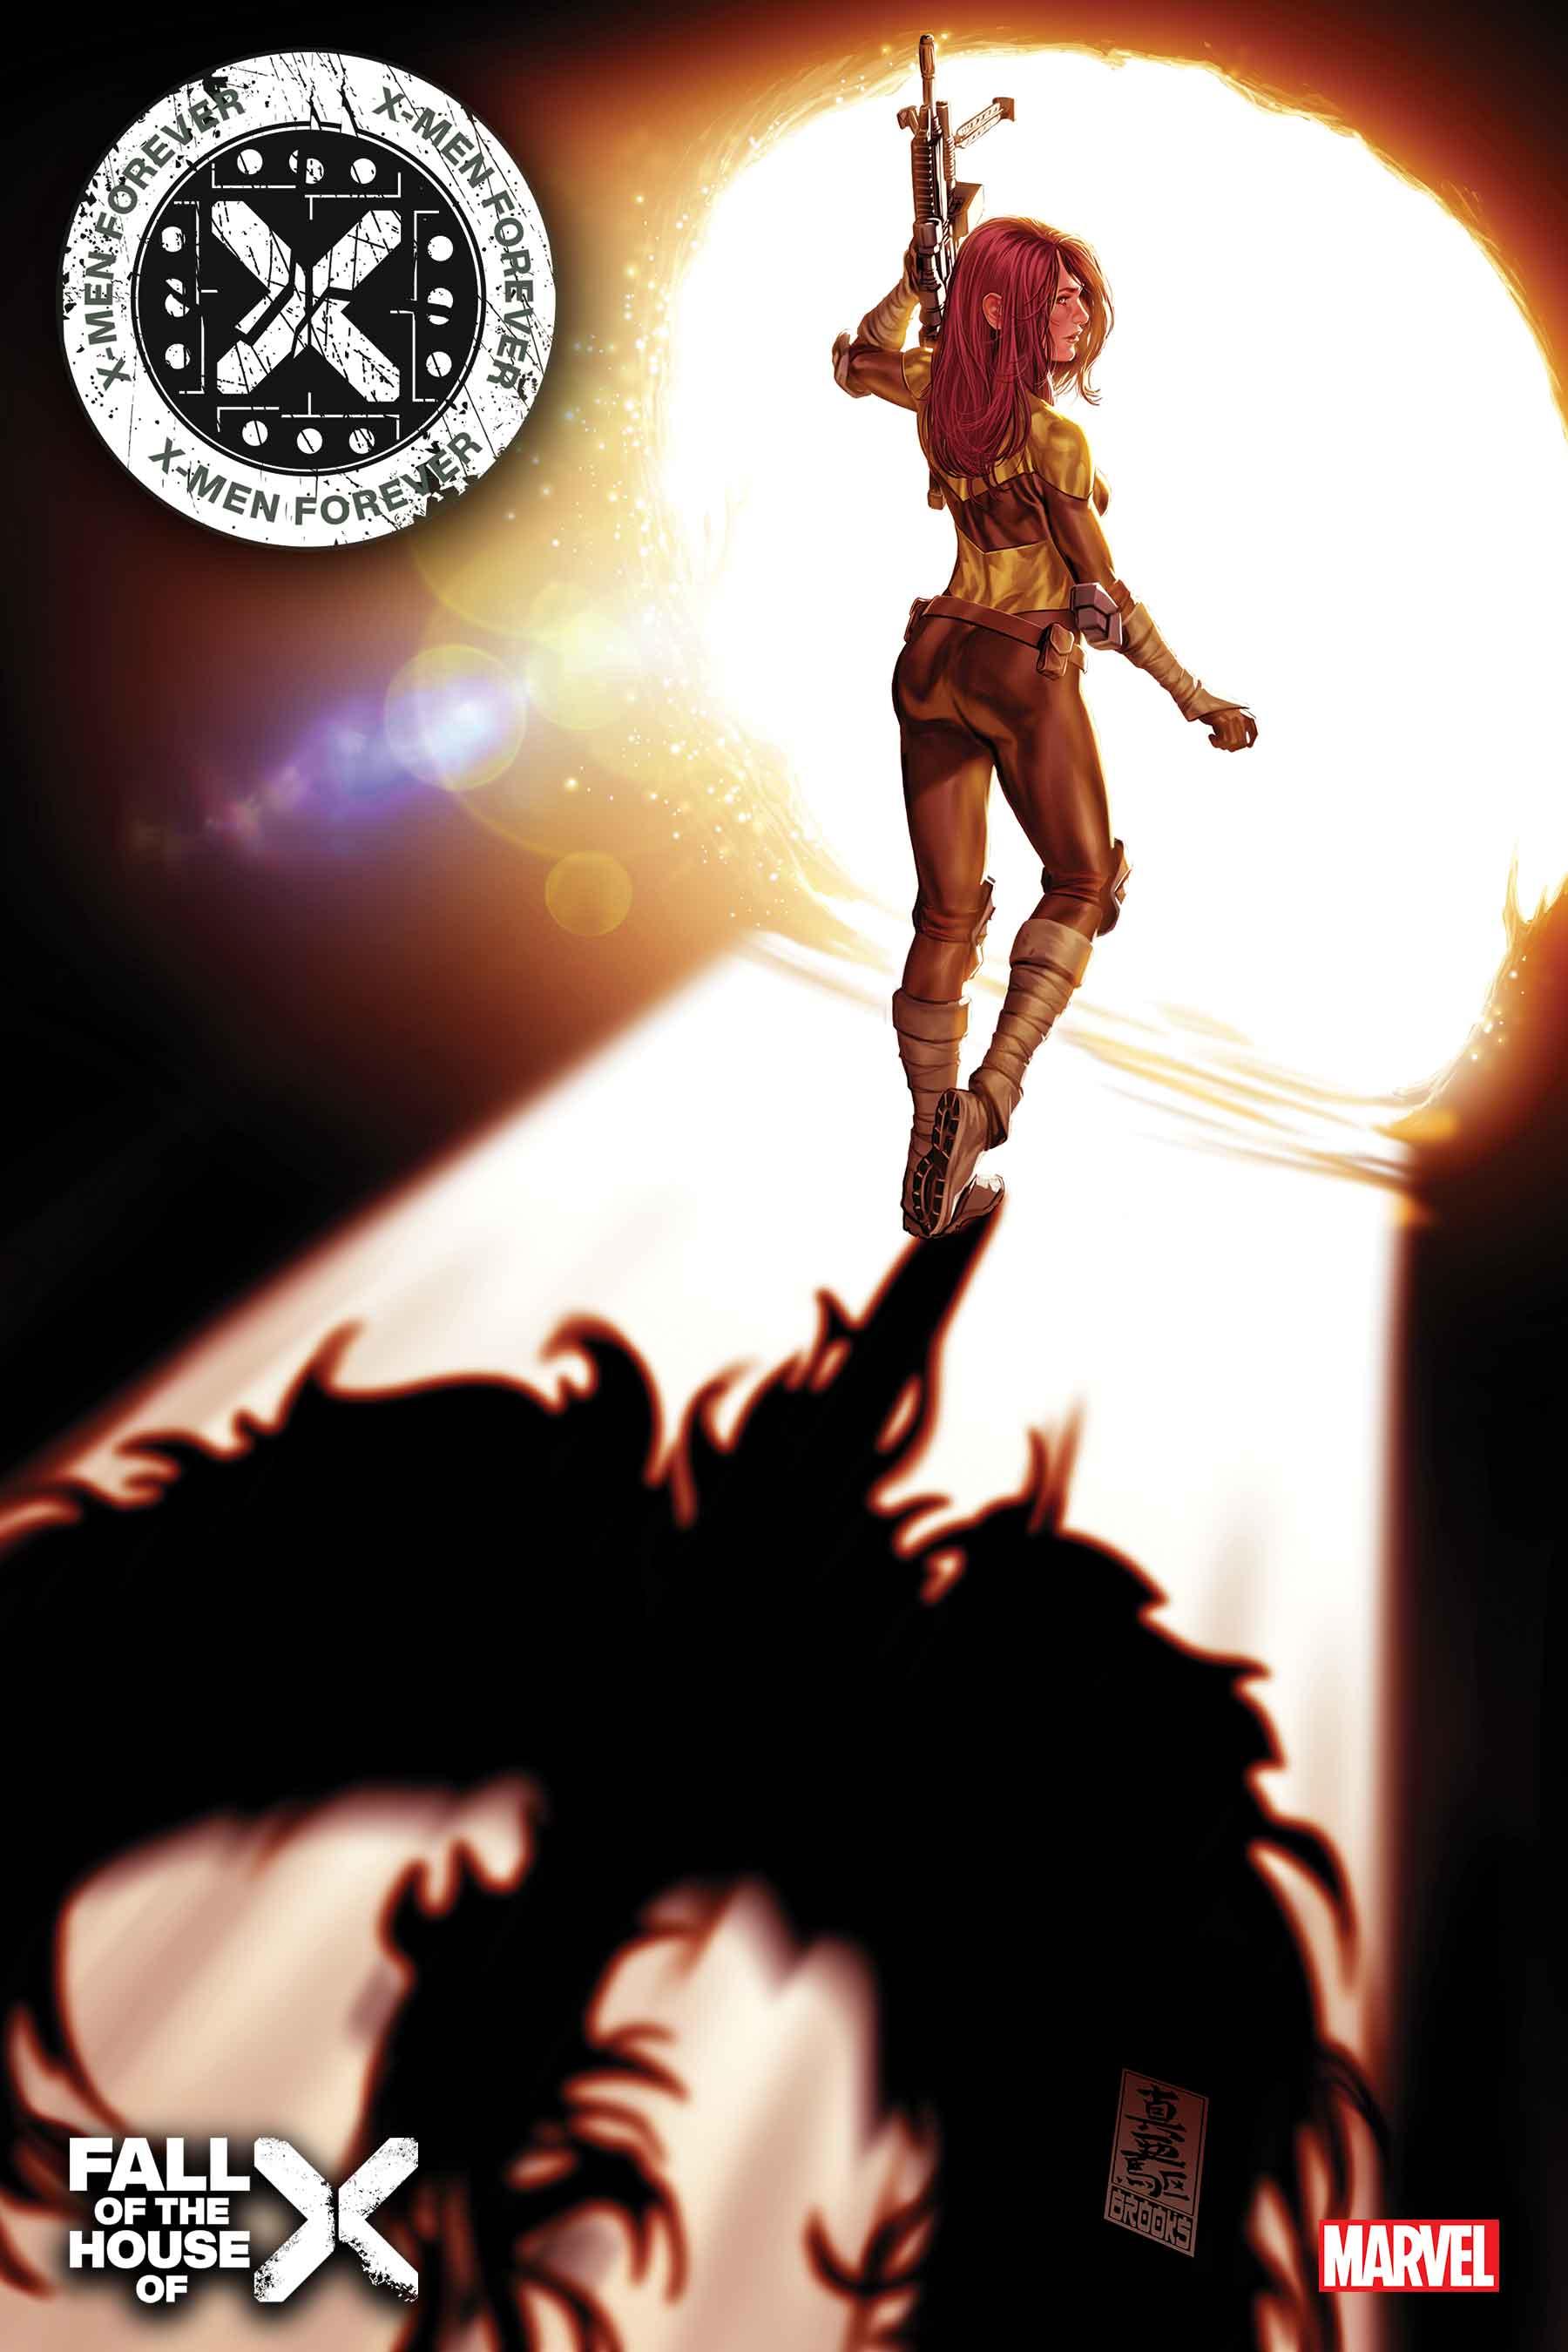 X-Men Forever #4 cover art